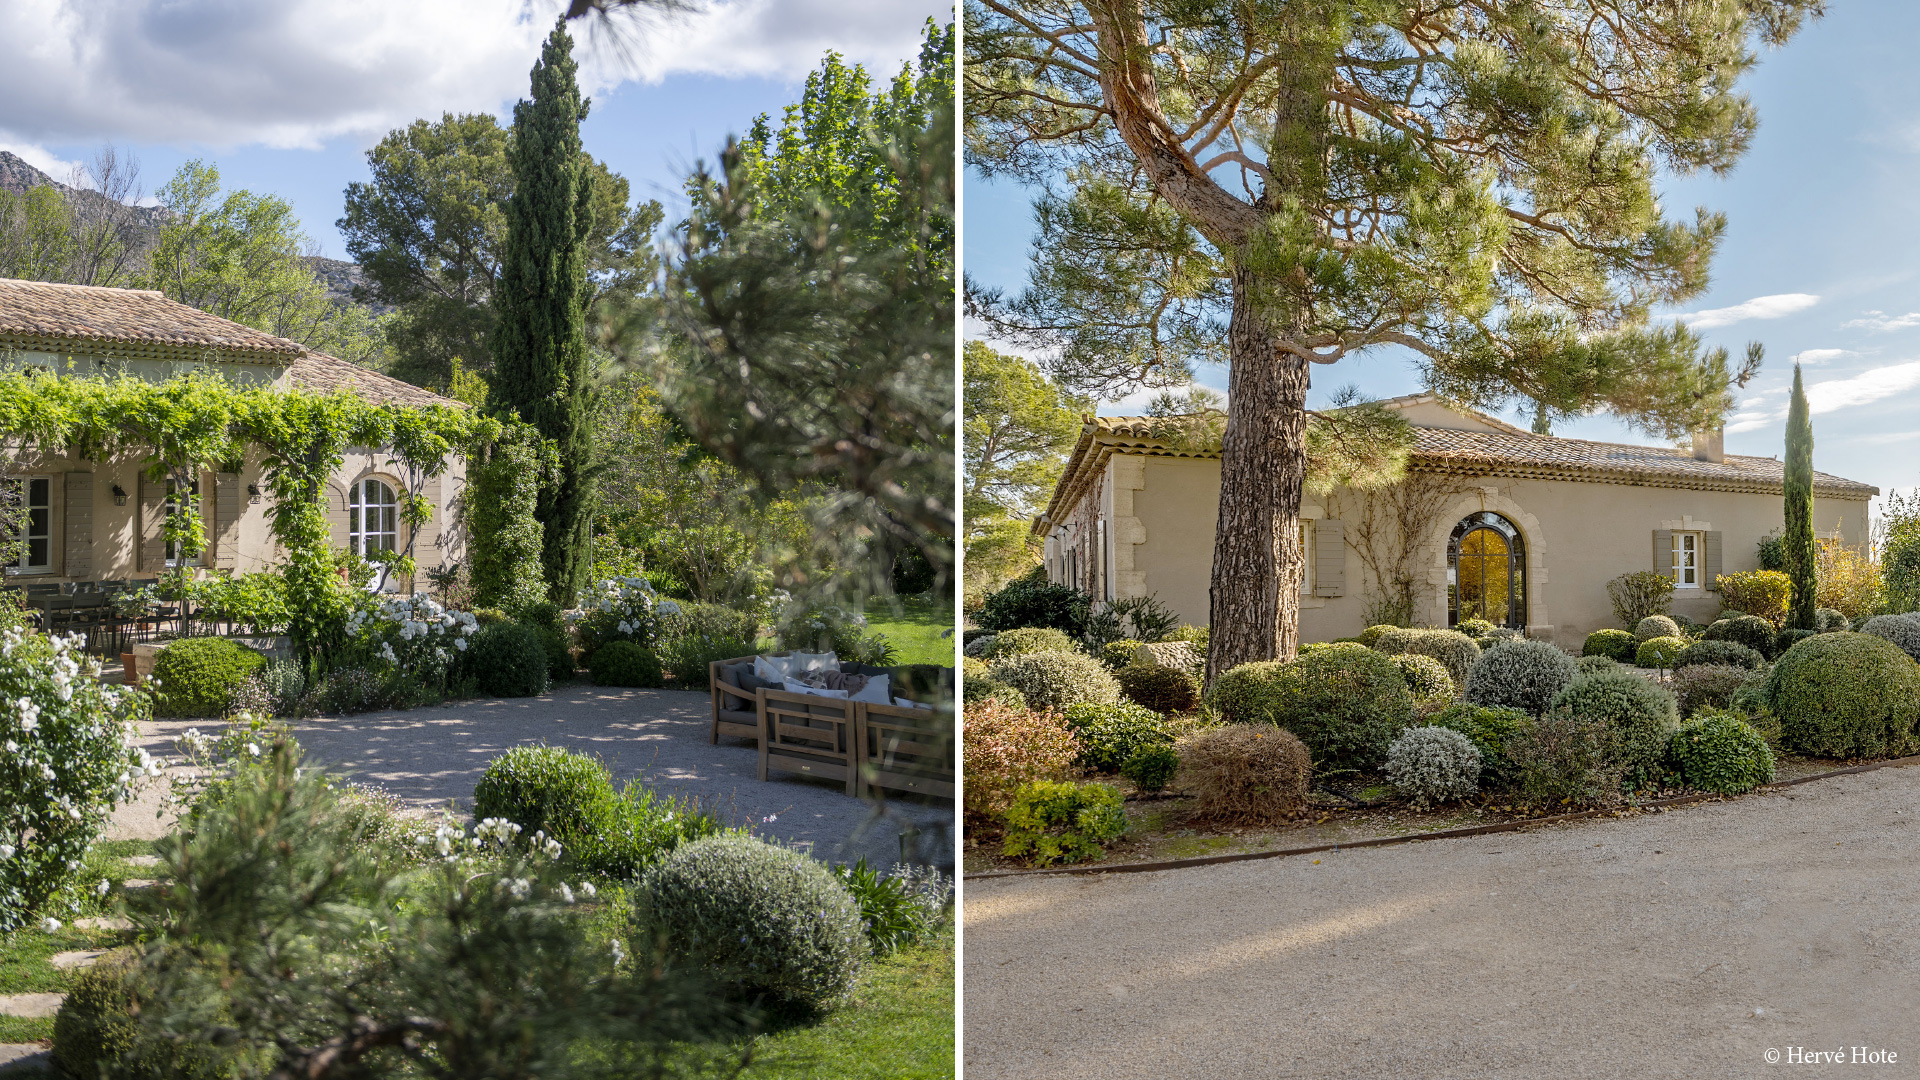 Mieten Sie privaten Pool üppige Gärten Luxus Provence